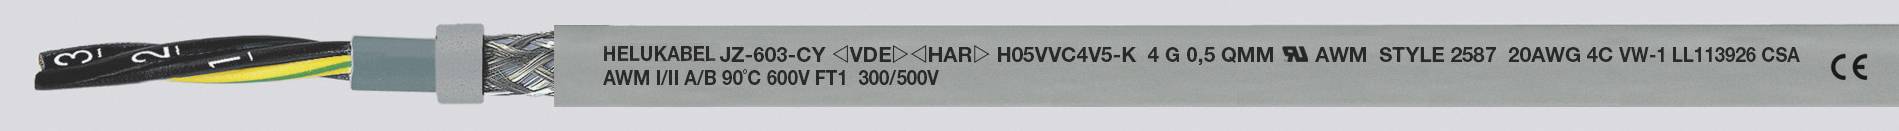 HELUKABEL JZ-603-CY Steuerleitung 3 G 0.50 mm² Grau 83720-1000 1000 m